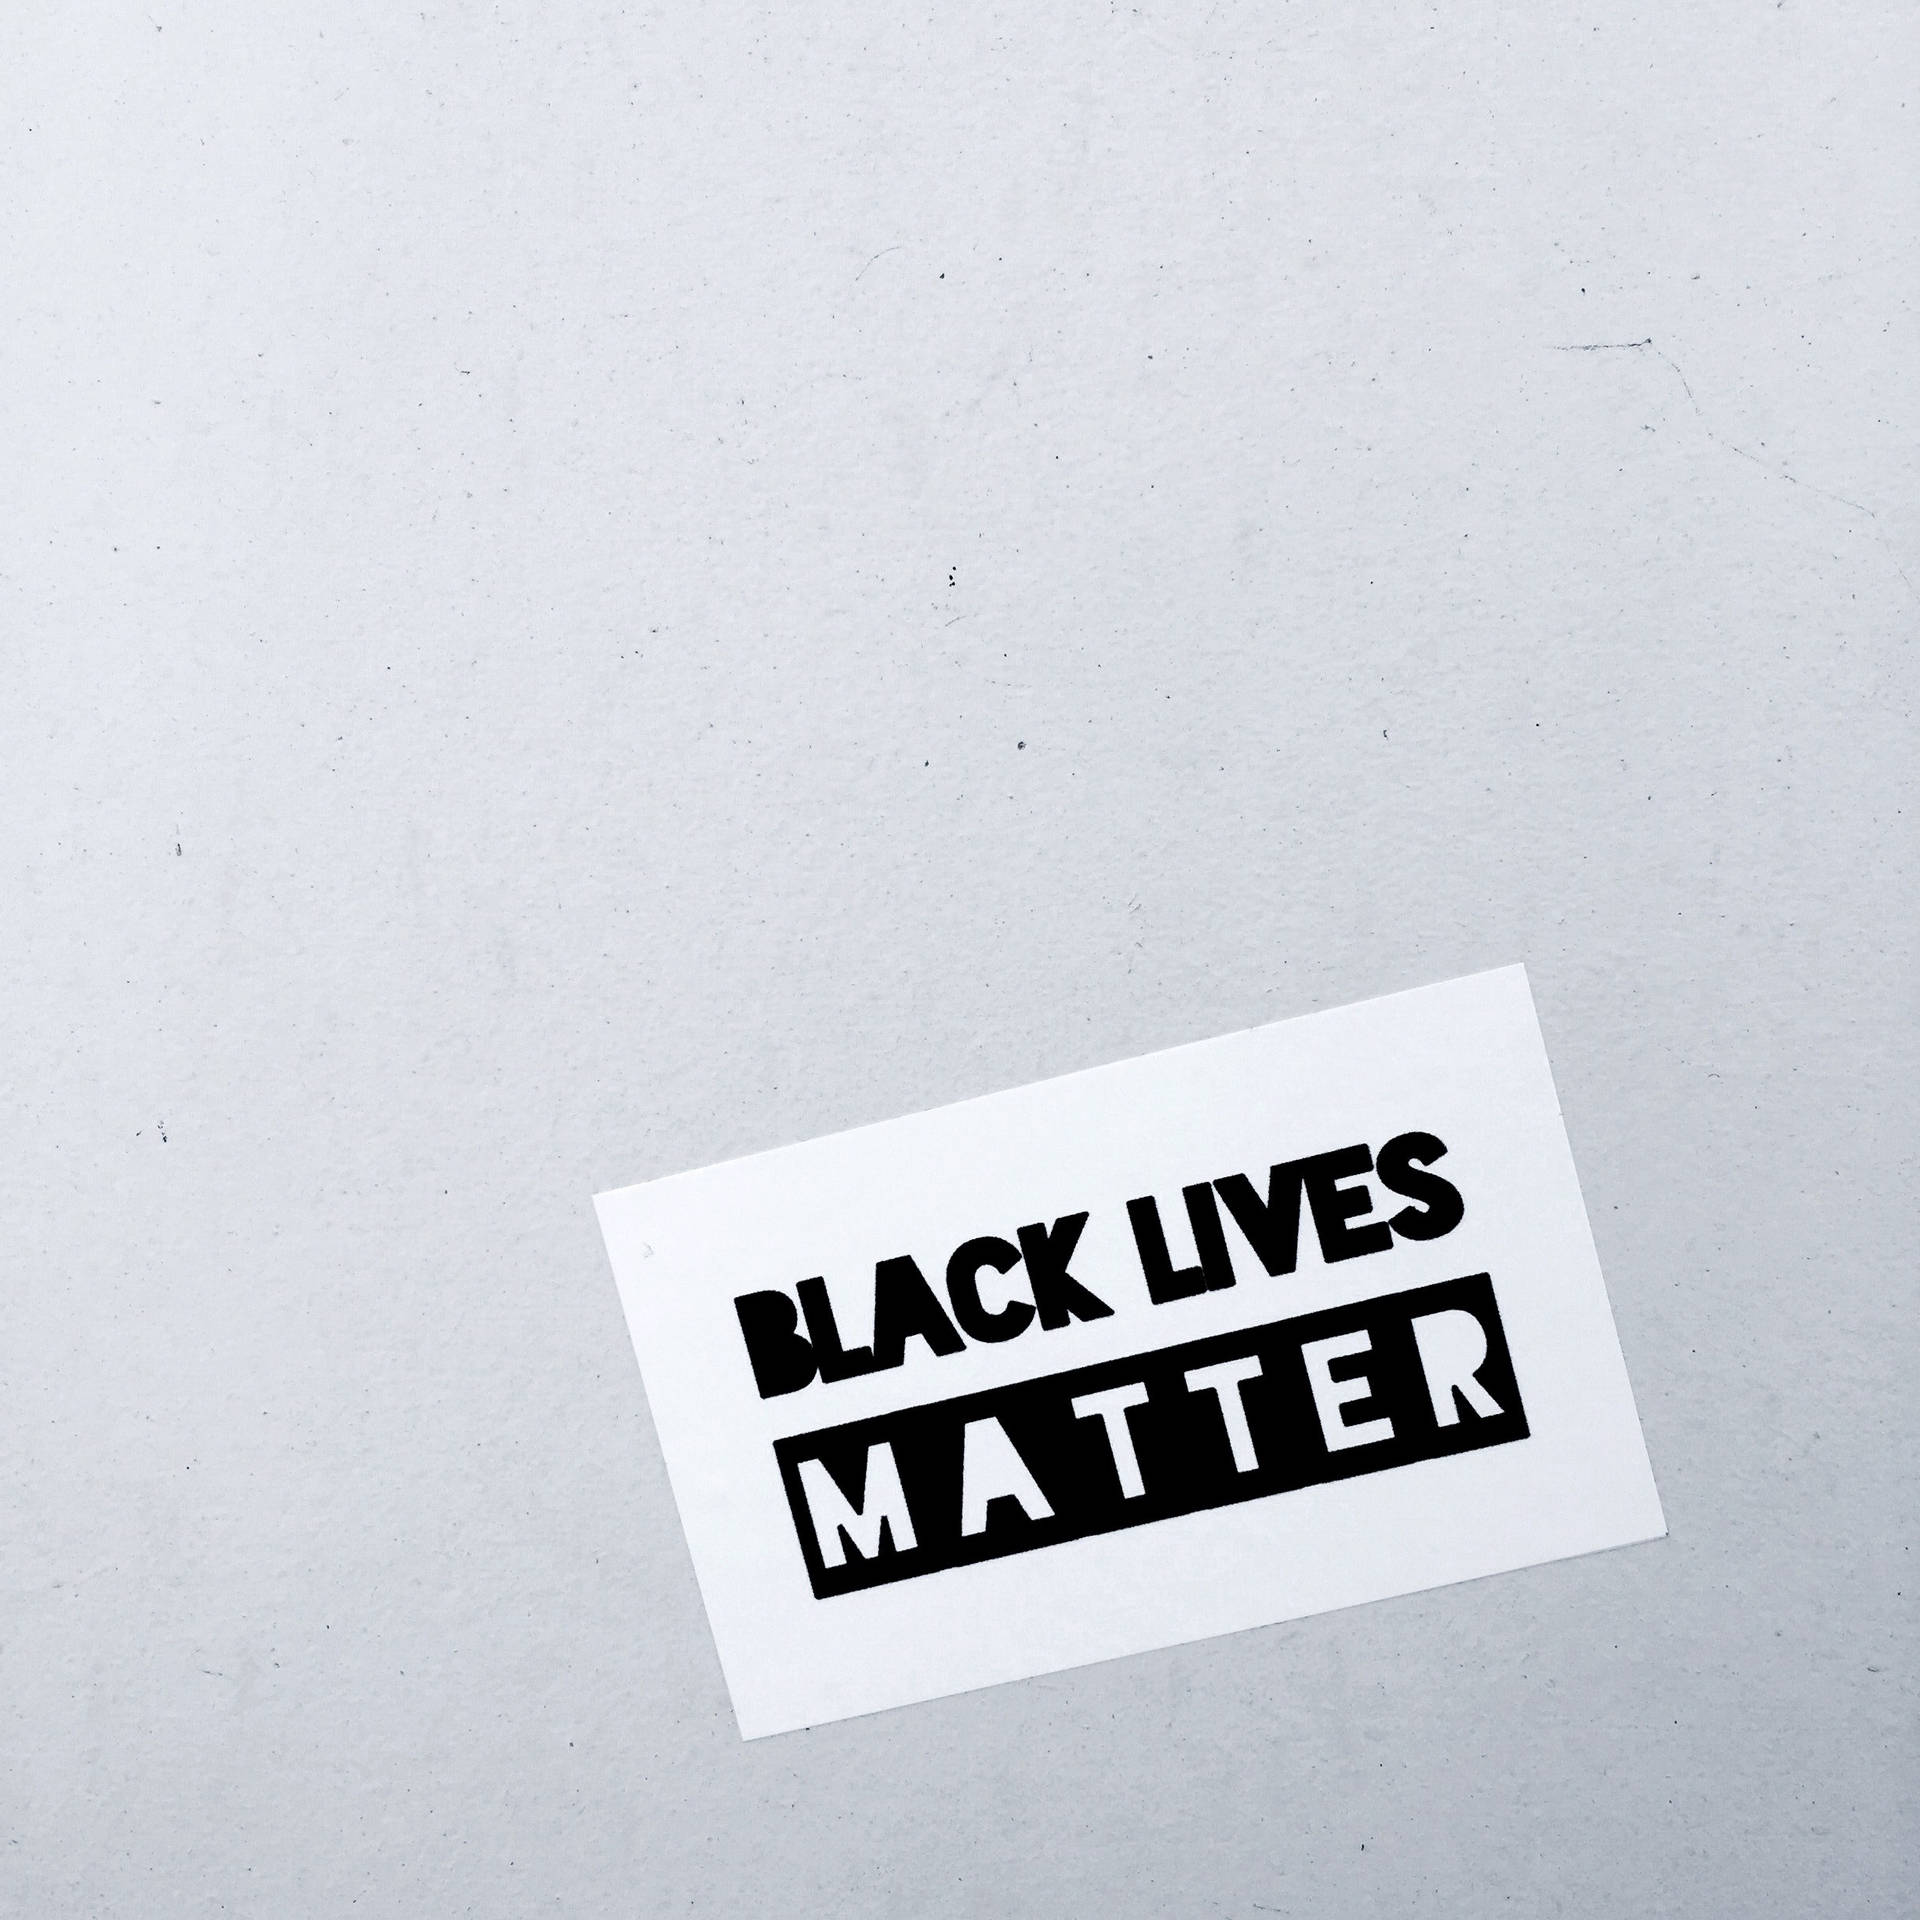 Black Lives Matter Sticker On Wall Wallpaper